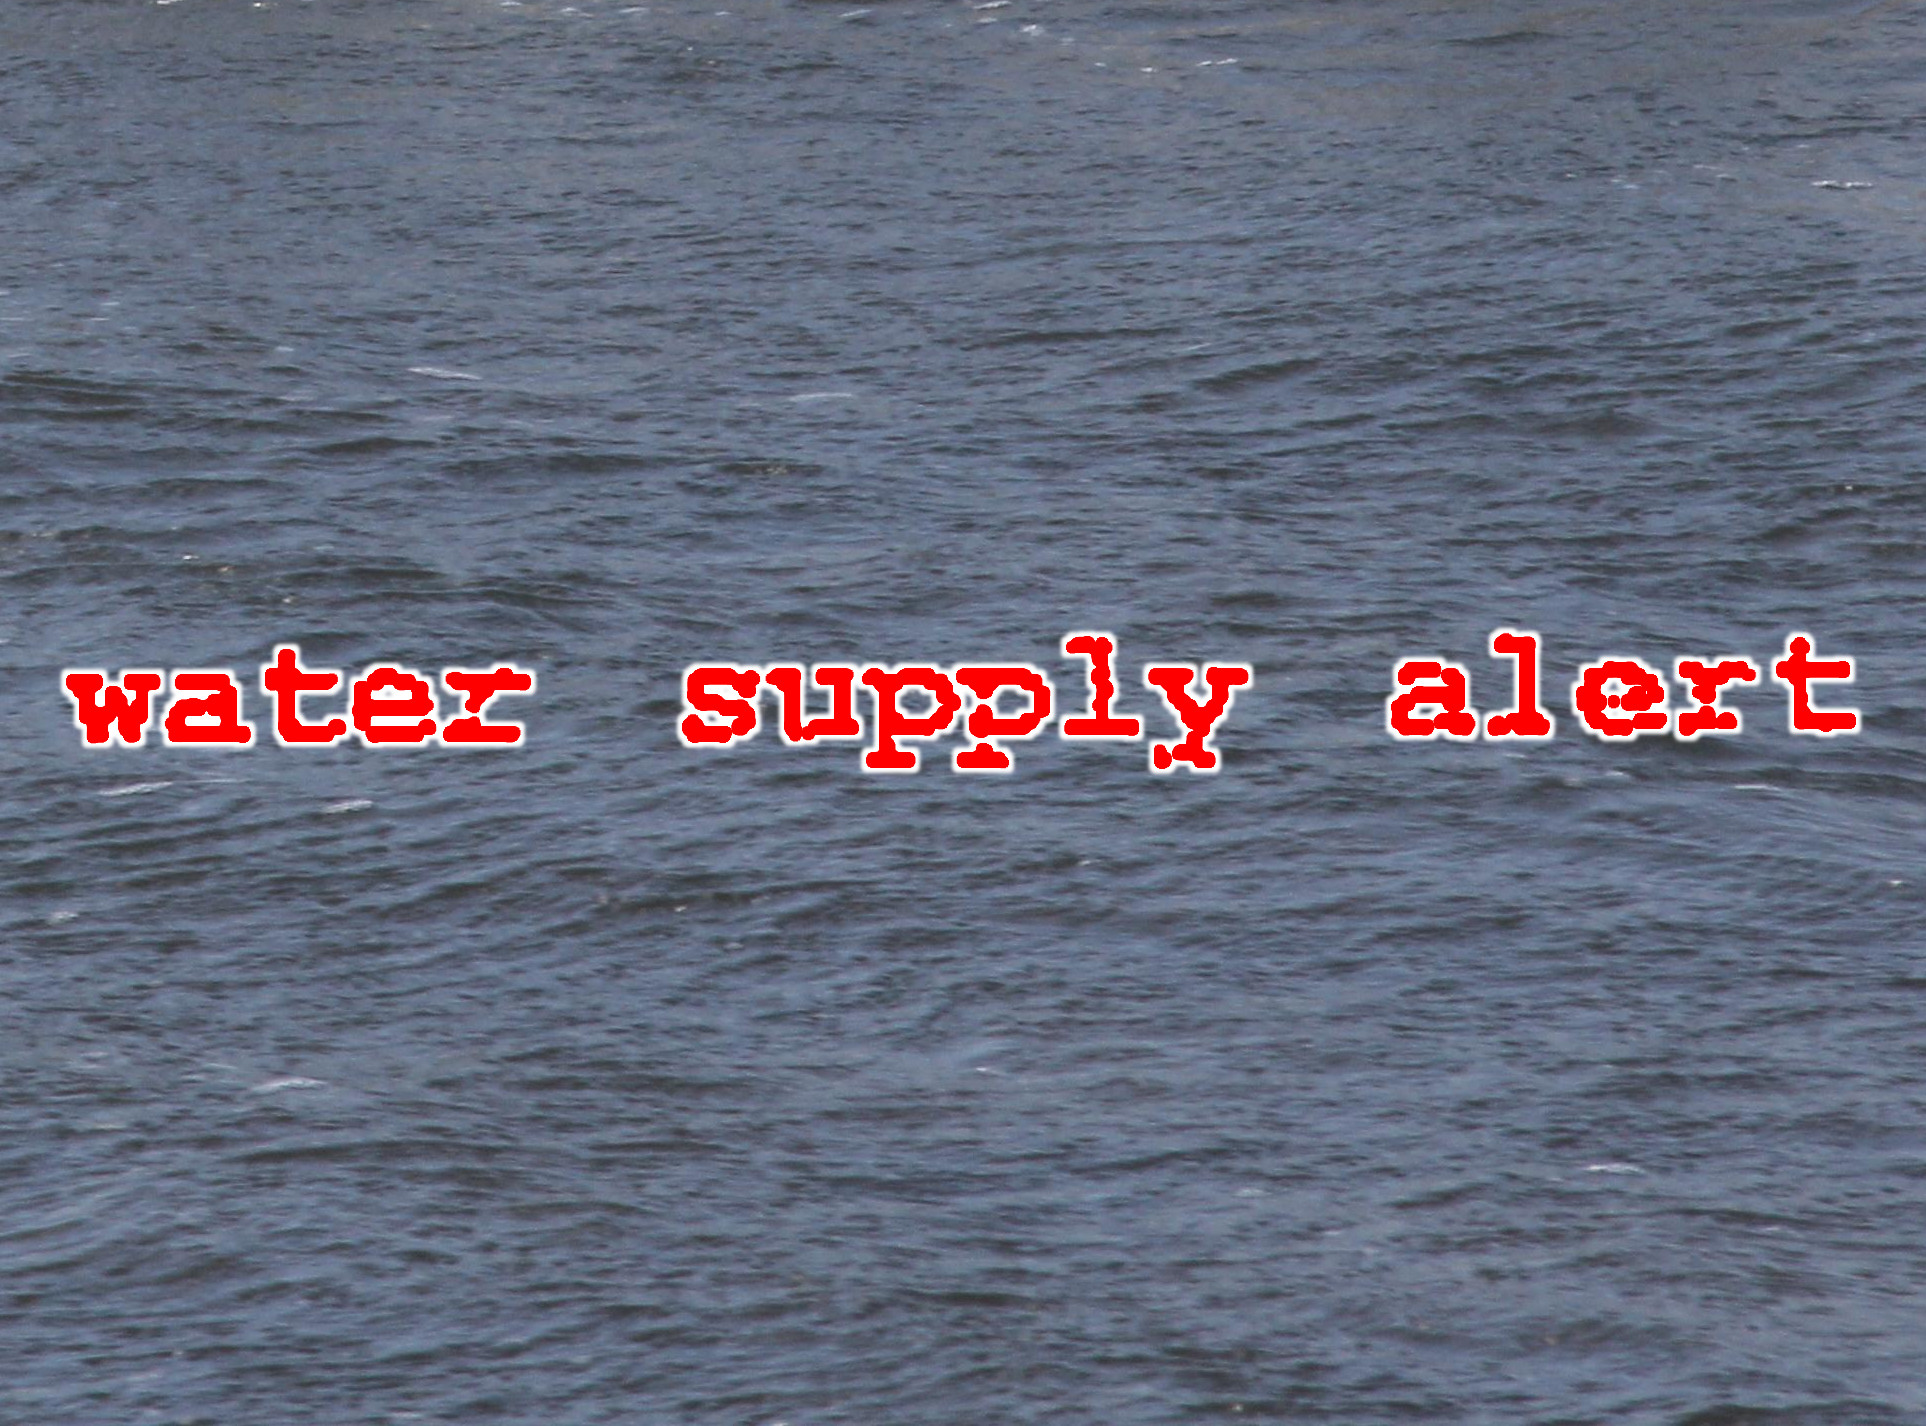 Stewart Admits to Water Supply Alert